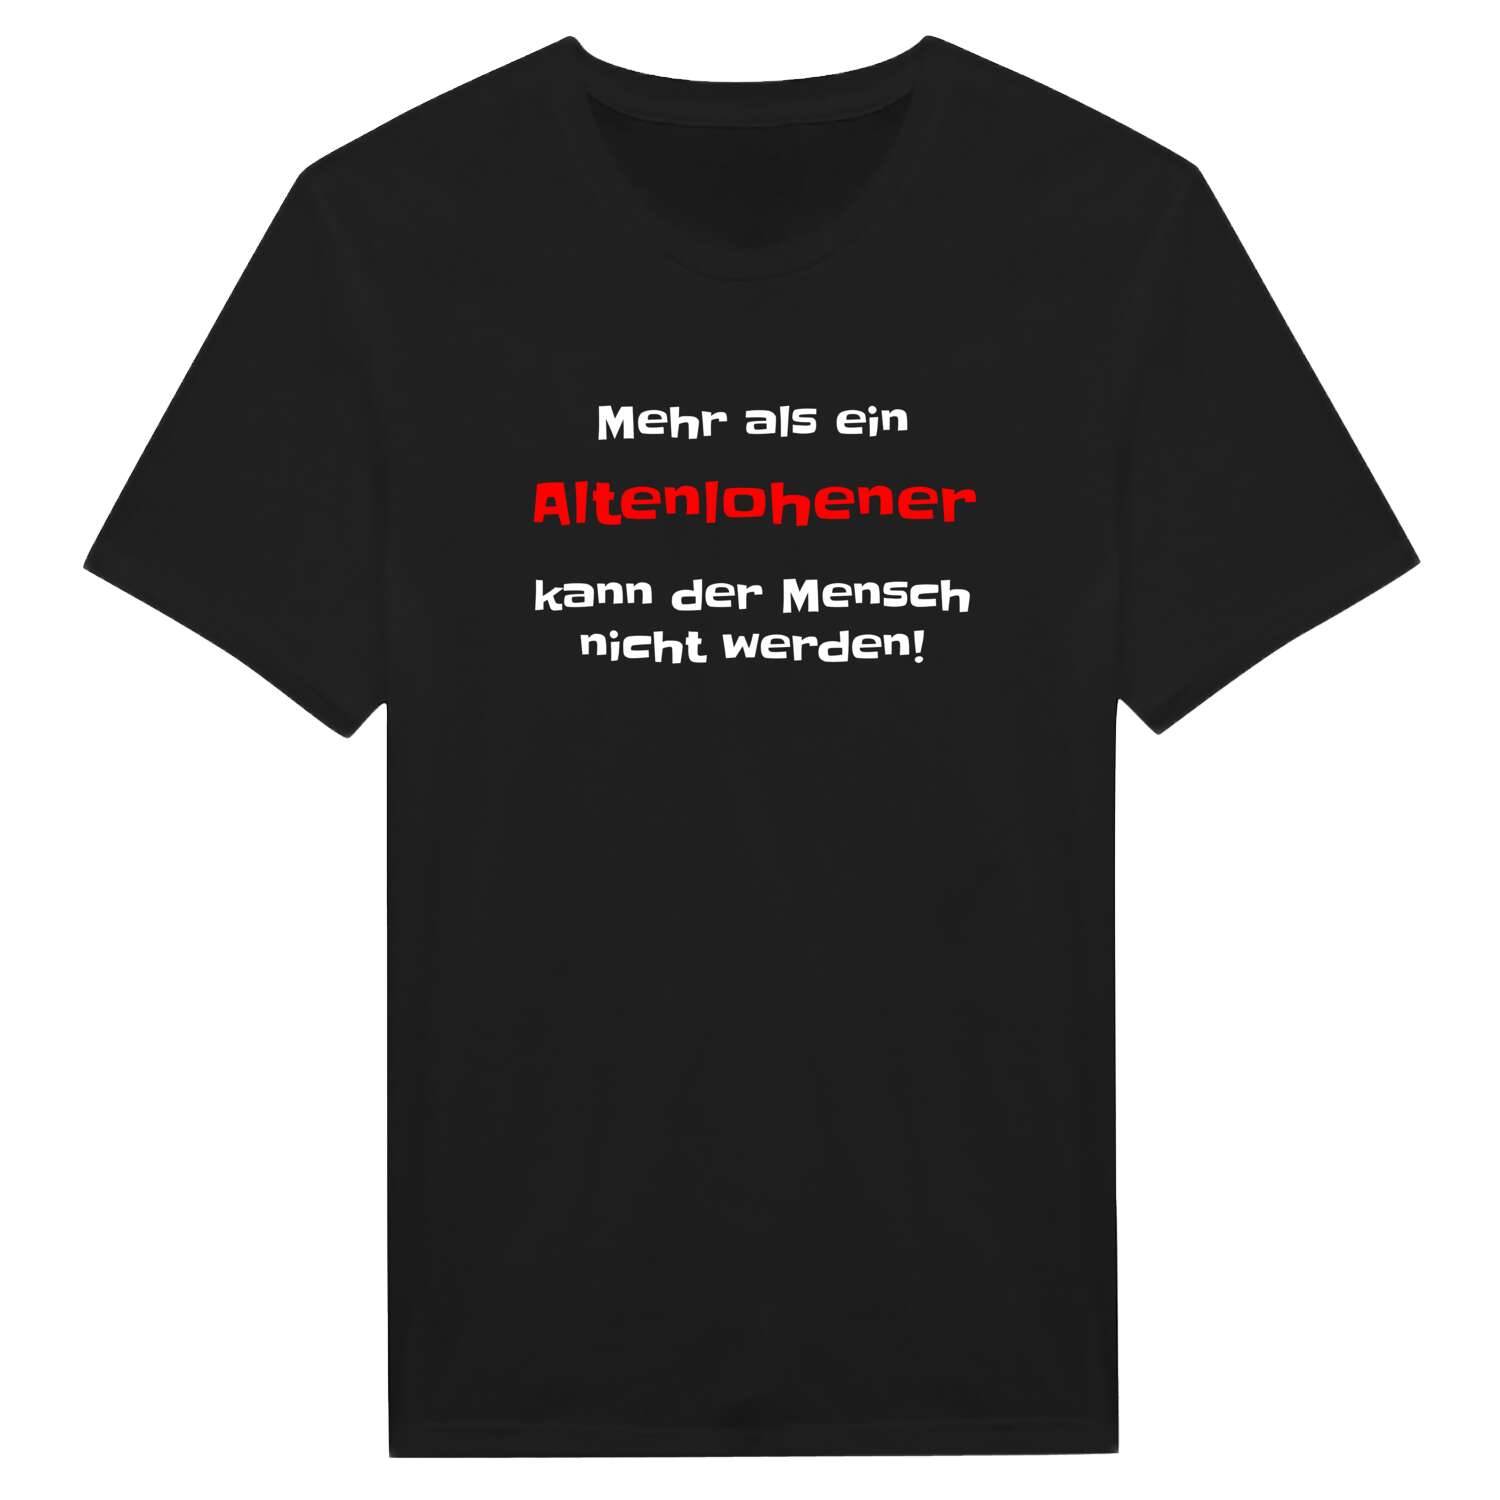 Altenlohe T-Shirt »Mehr als ein«